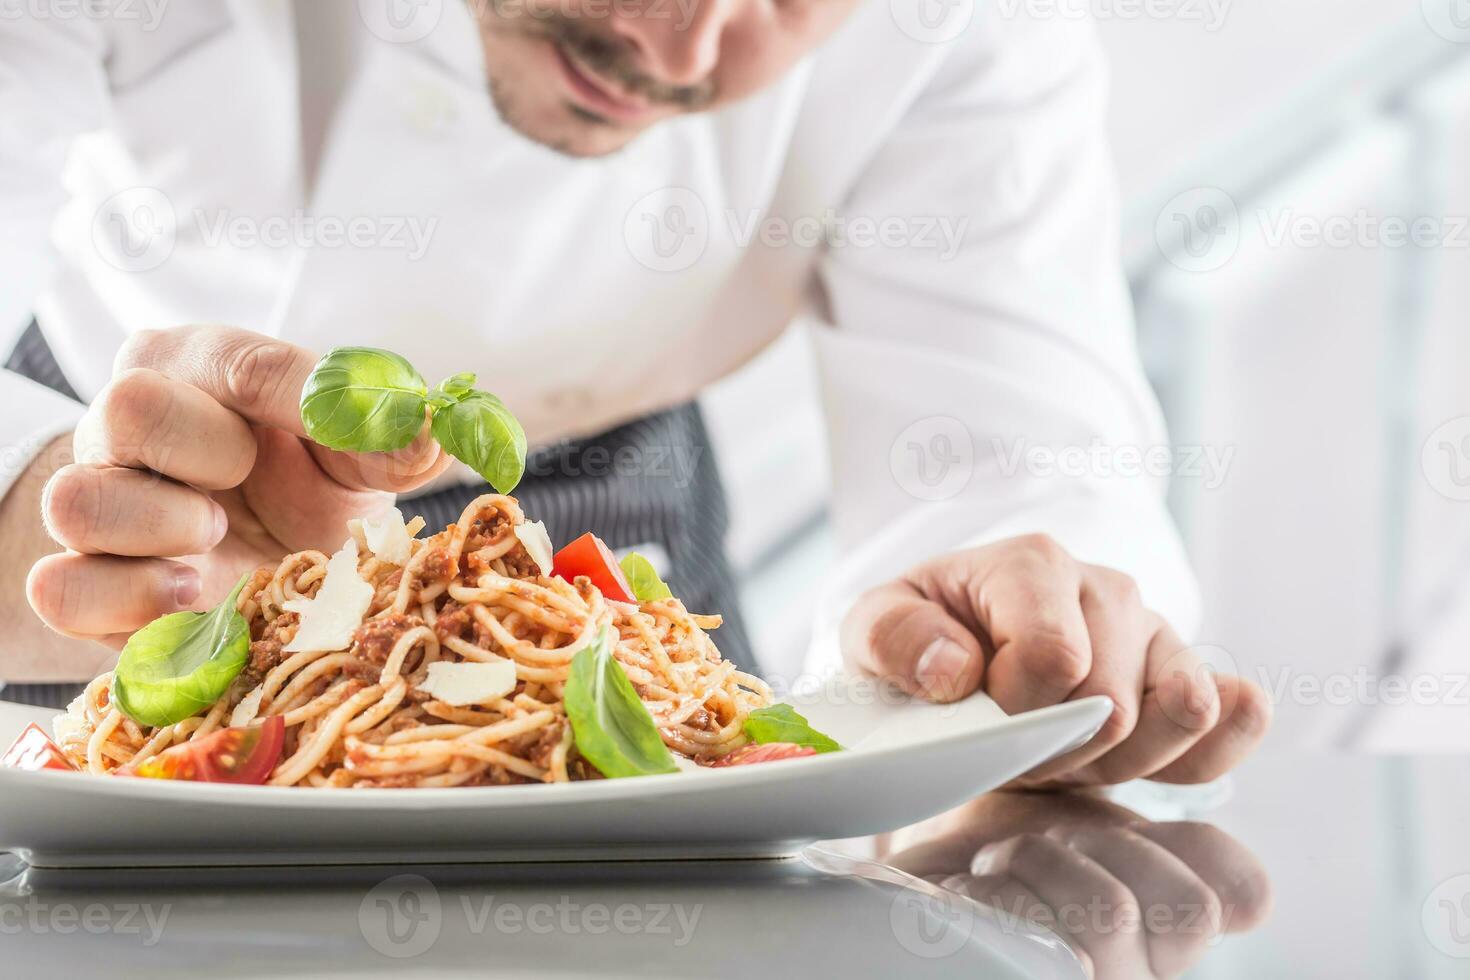 Koch im Restaurant Küche bereitet vor und dekoriert Mahlzeit mit Hände.kochen vorbereiten Spaghetti Bolognese foto